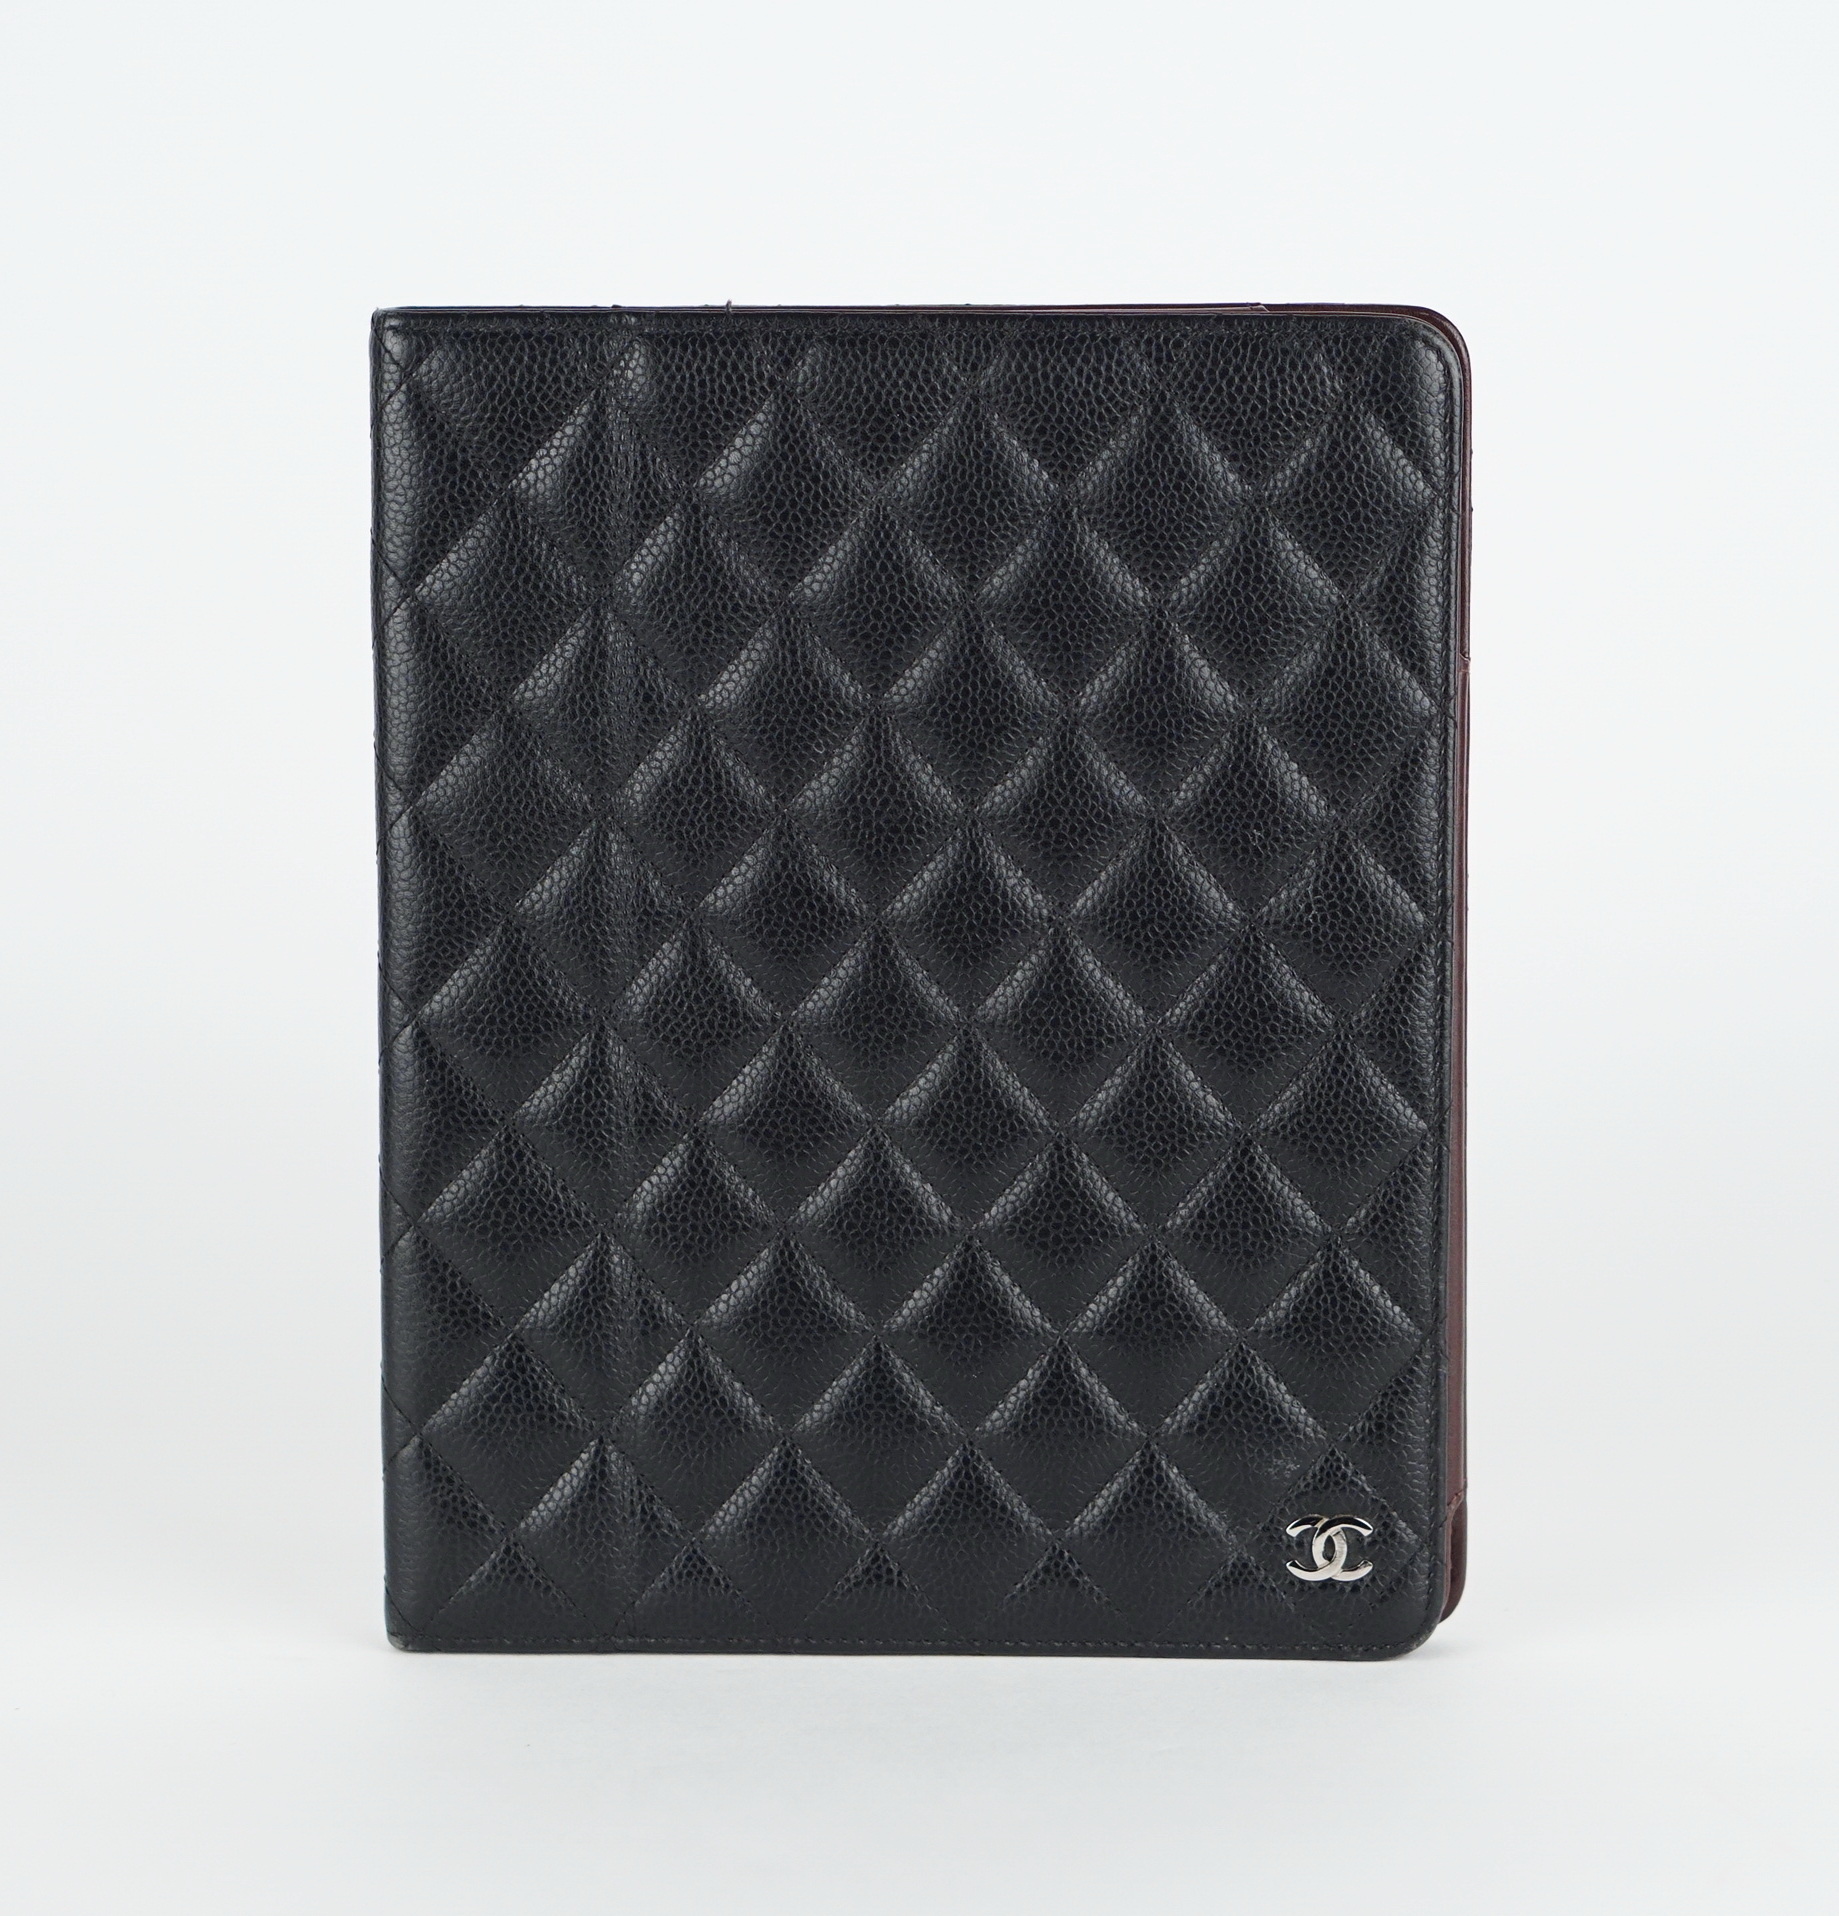 Caviar Leather iPad Case 